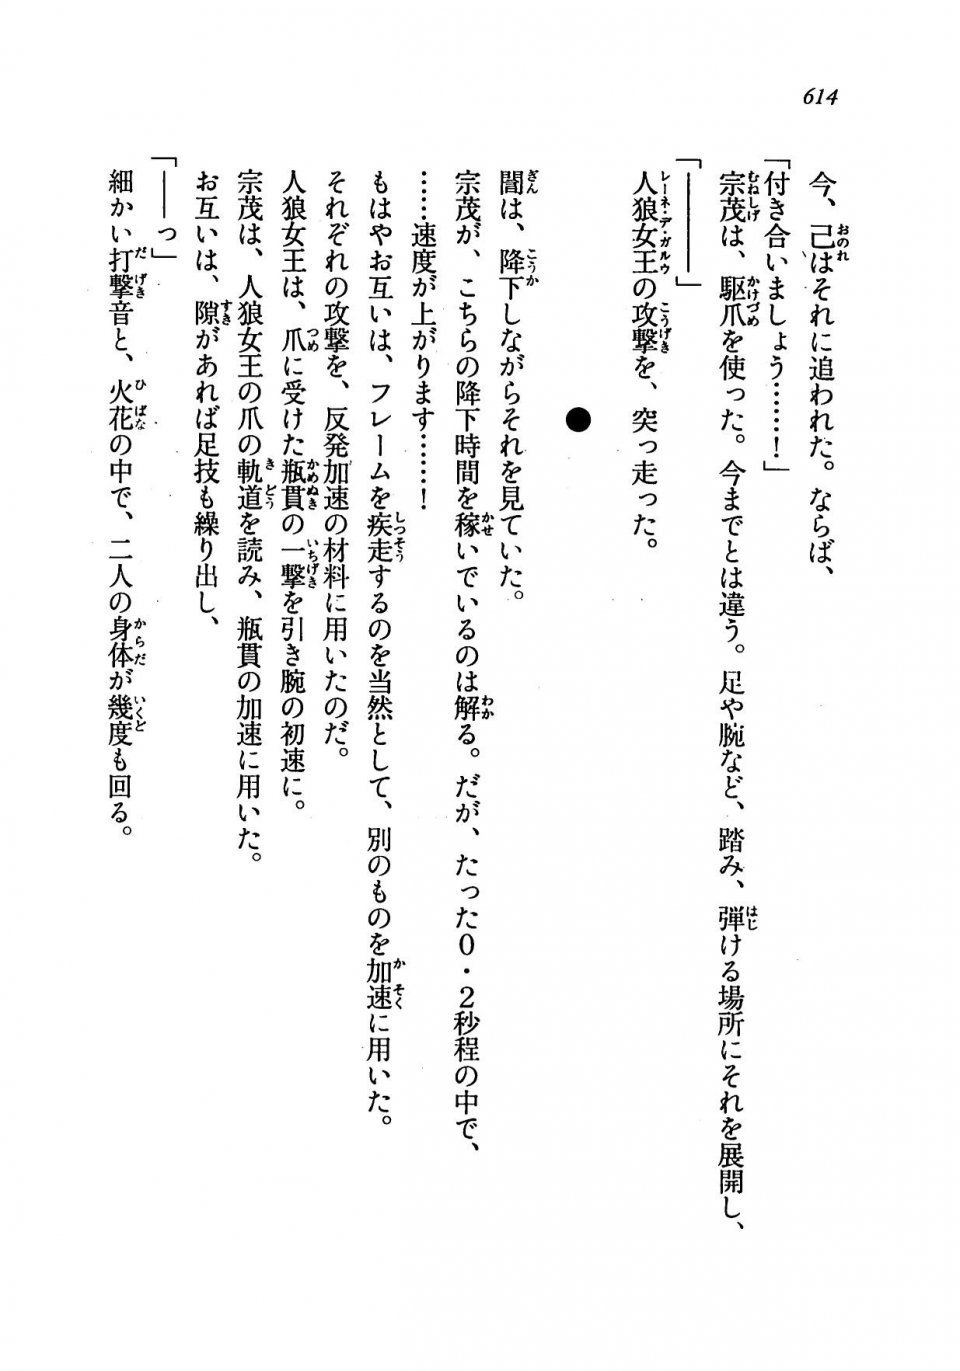 Kyoukai Senjou no Horizon LN Vol 19(8A) - Photo #614